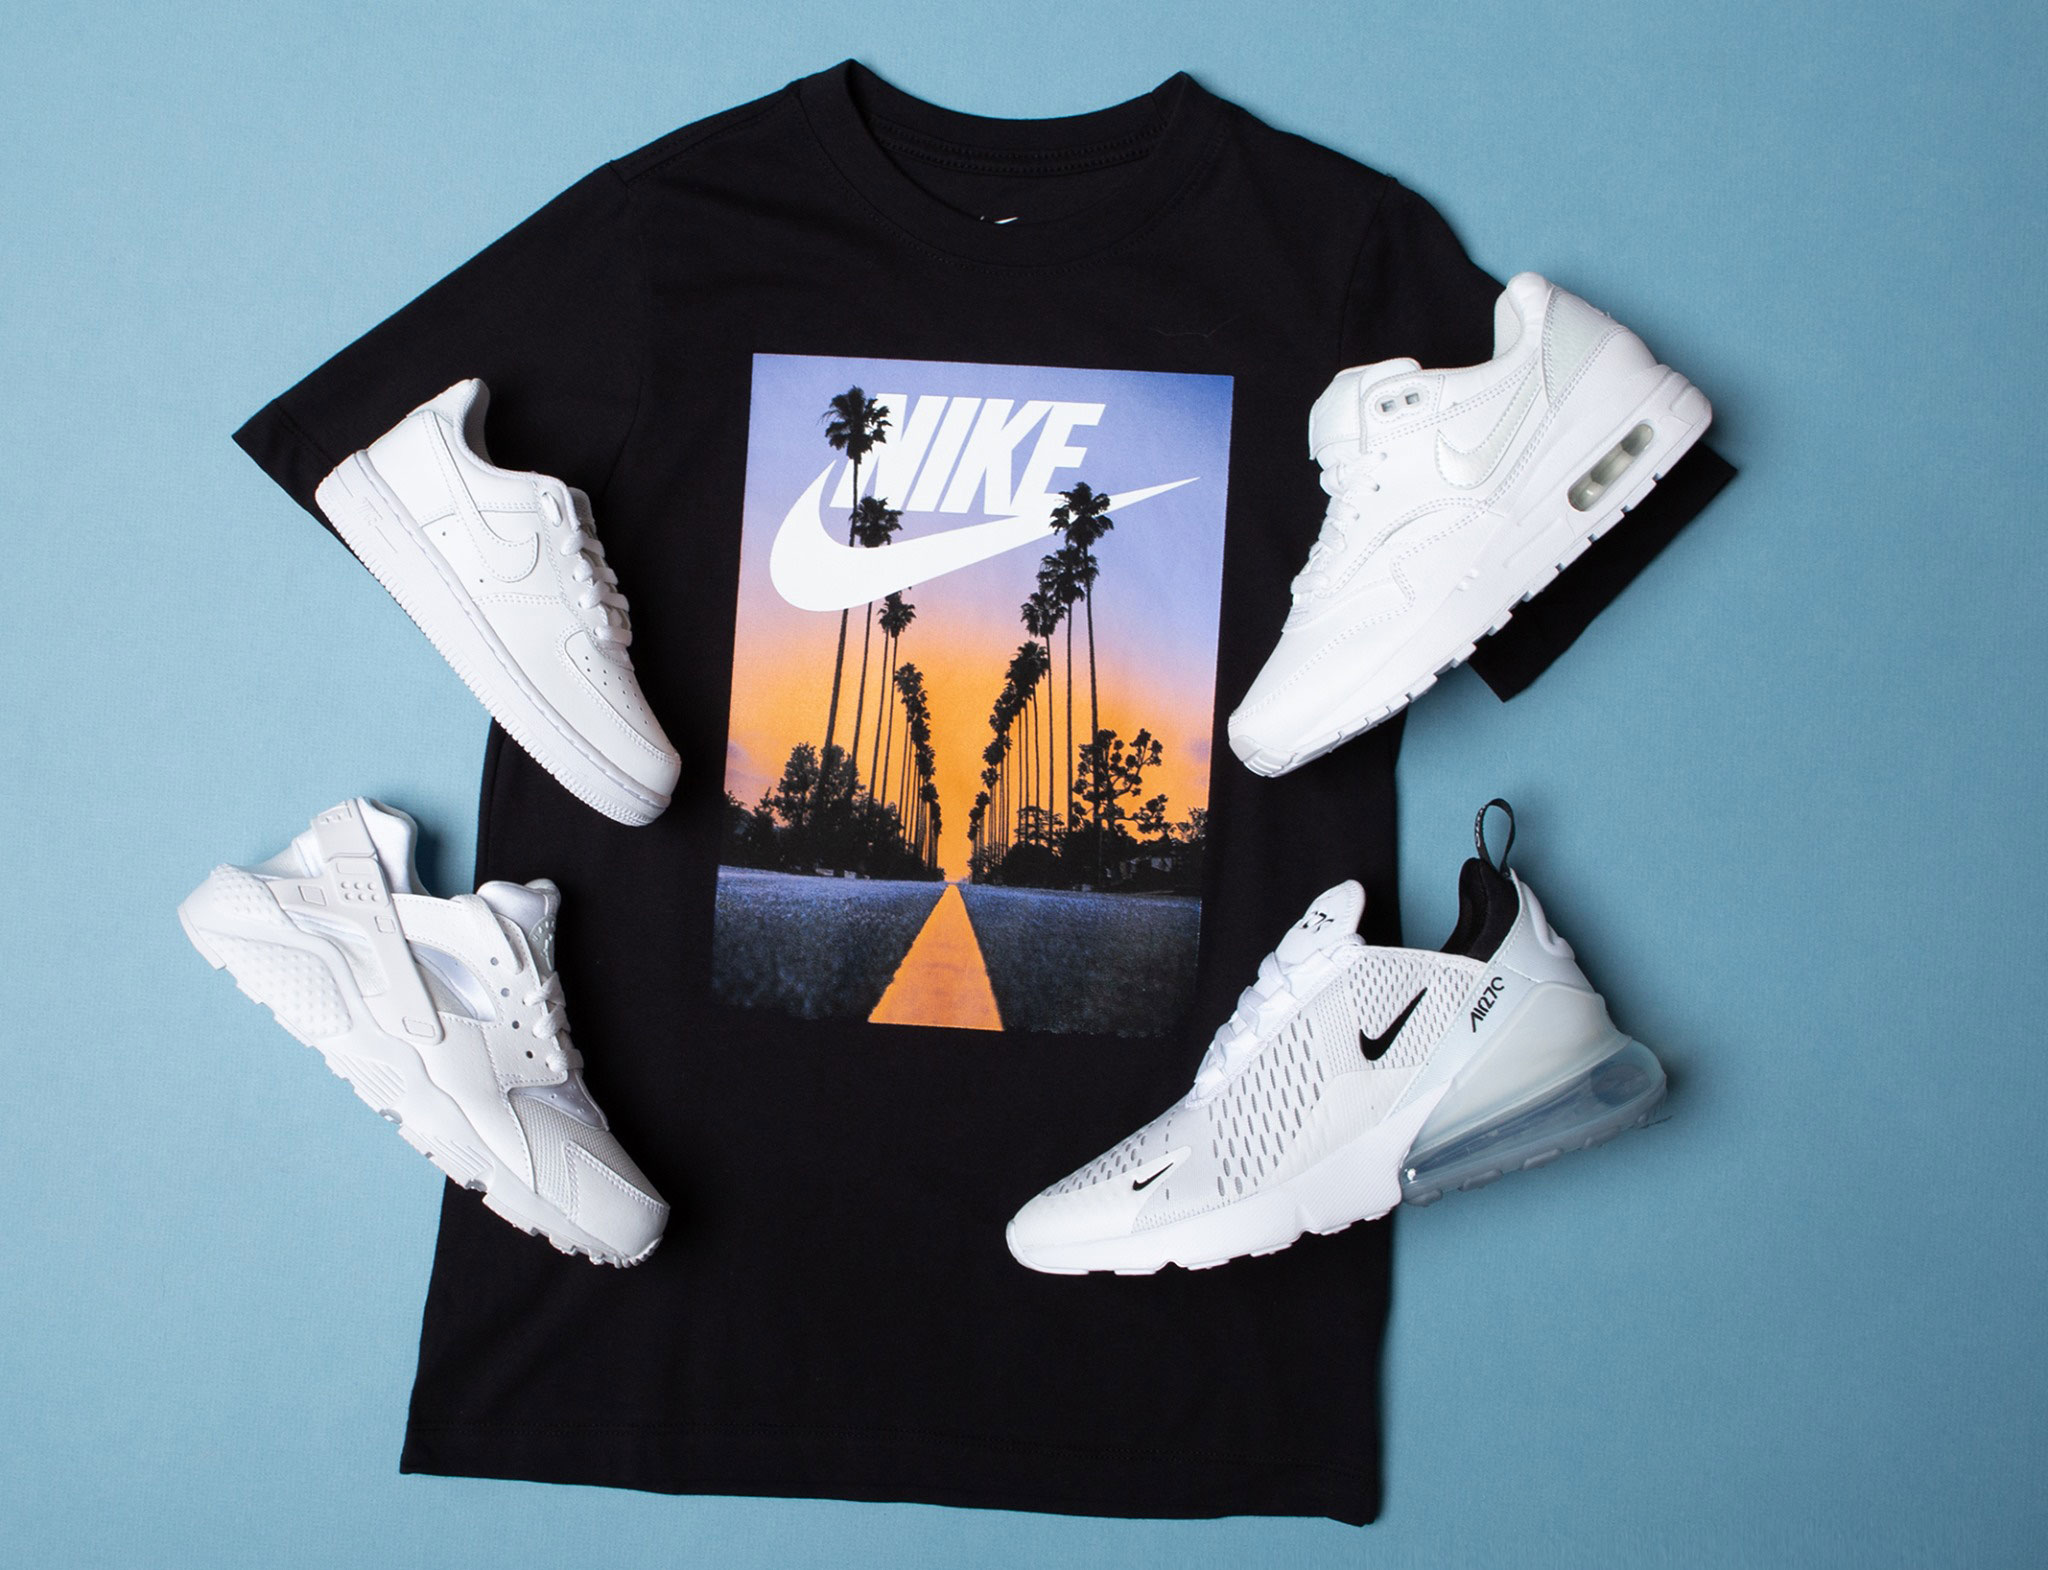 Nike Air Triple White Shoes Shirt Match 